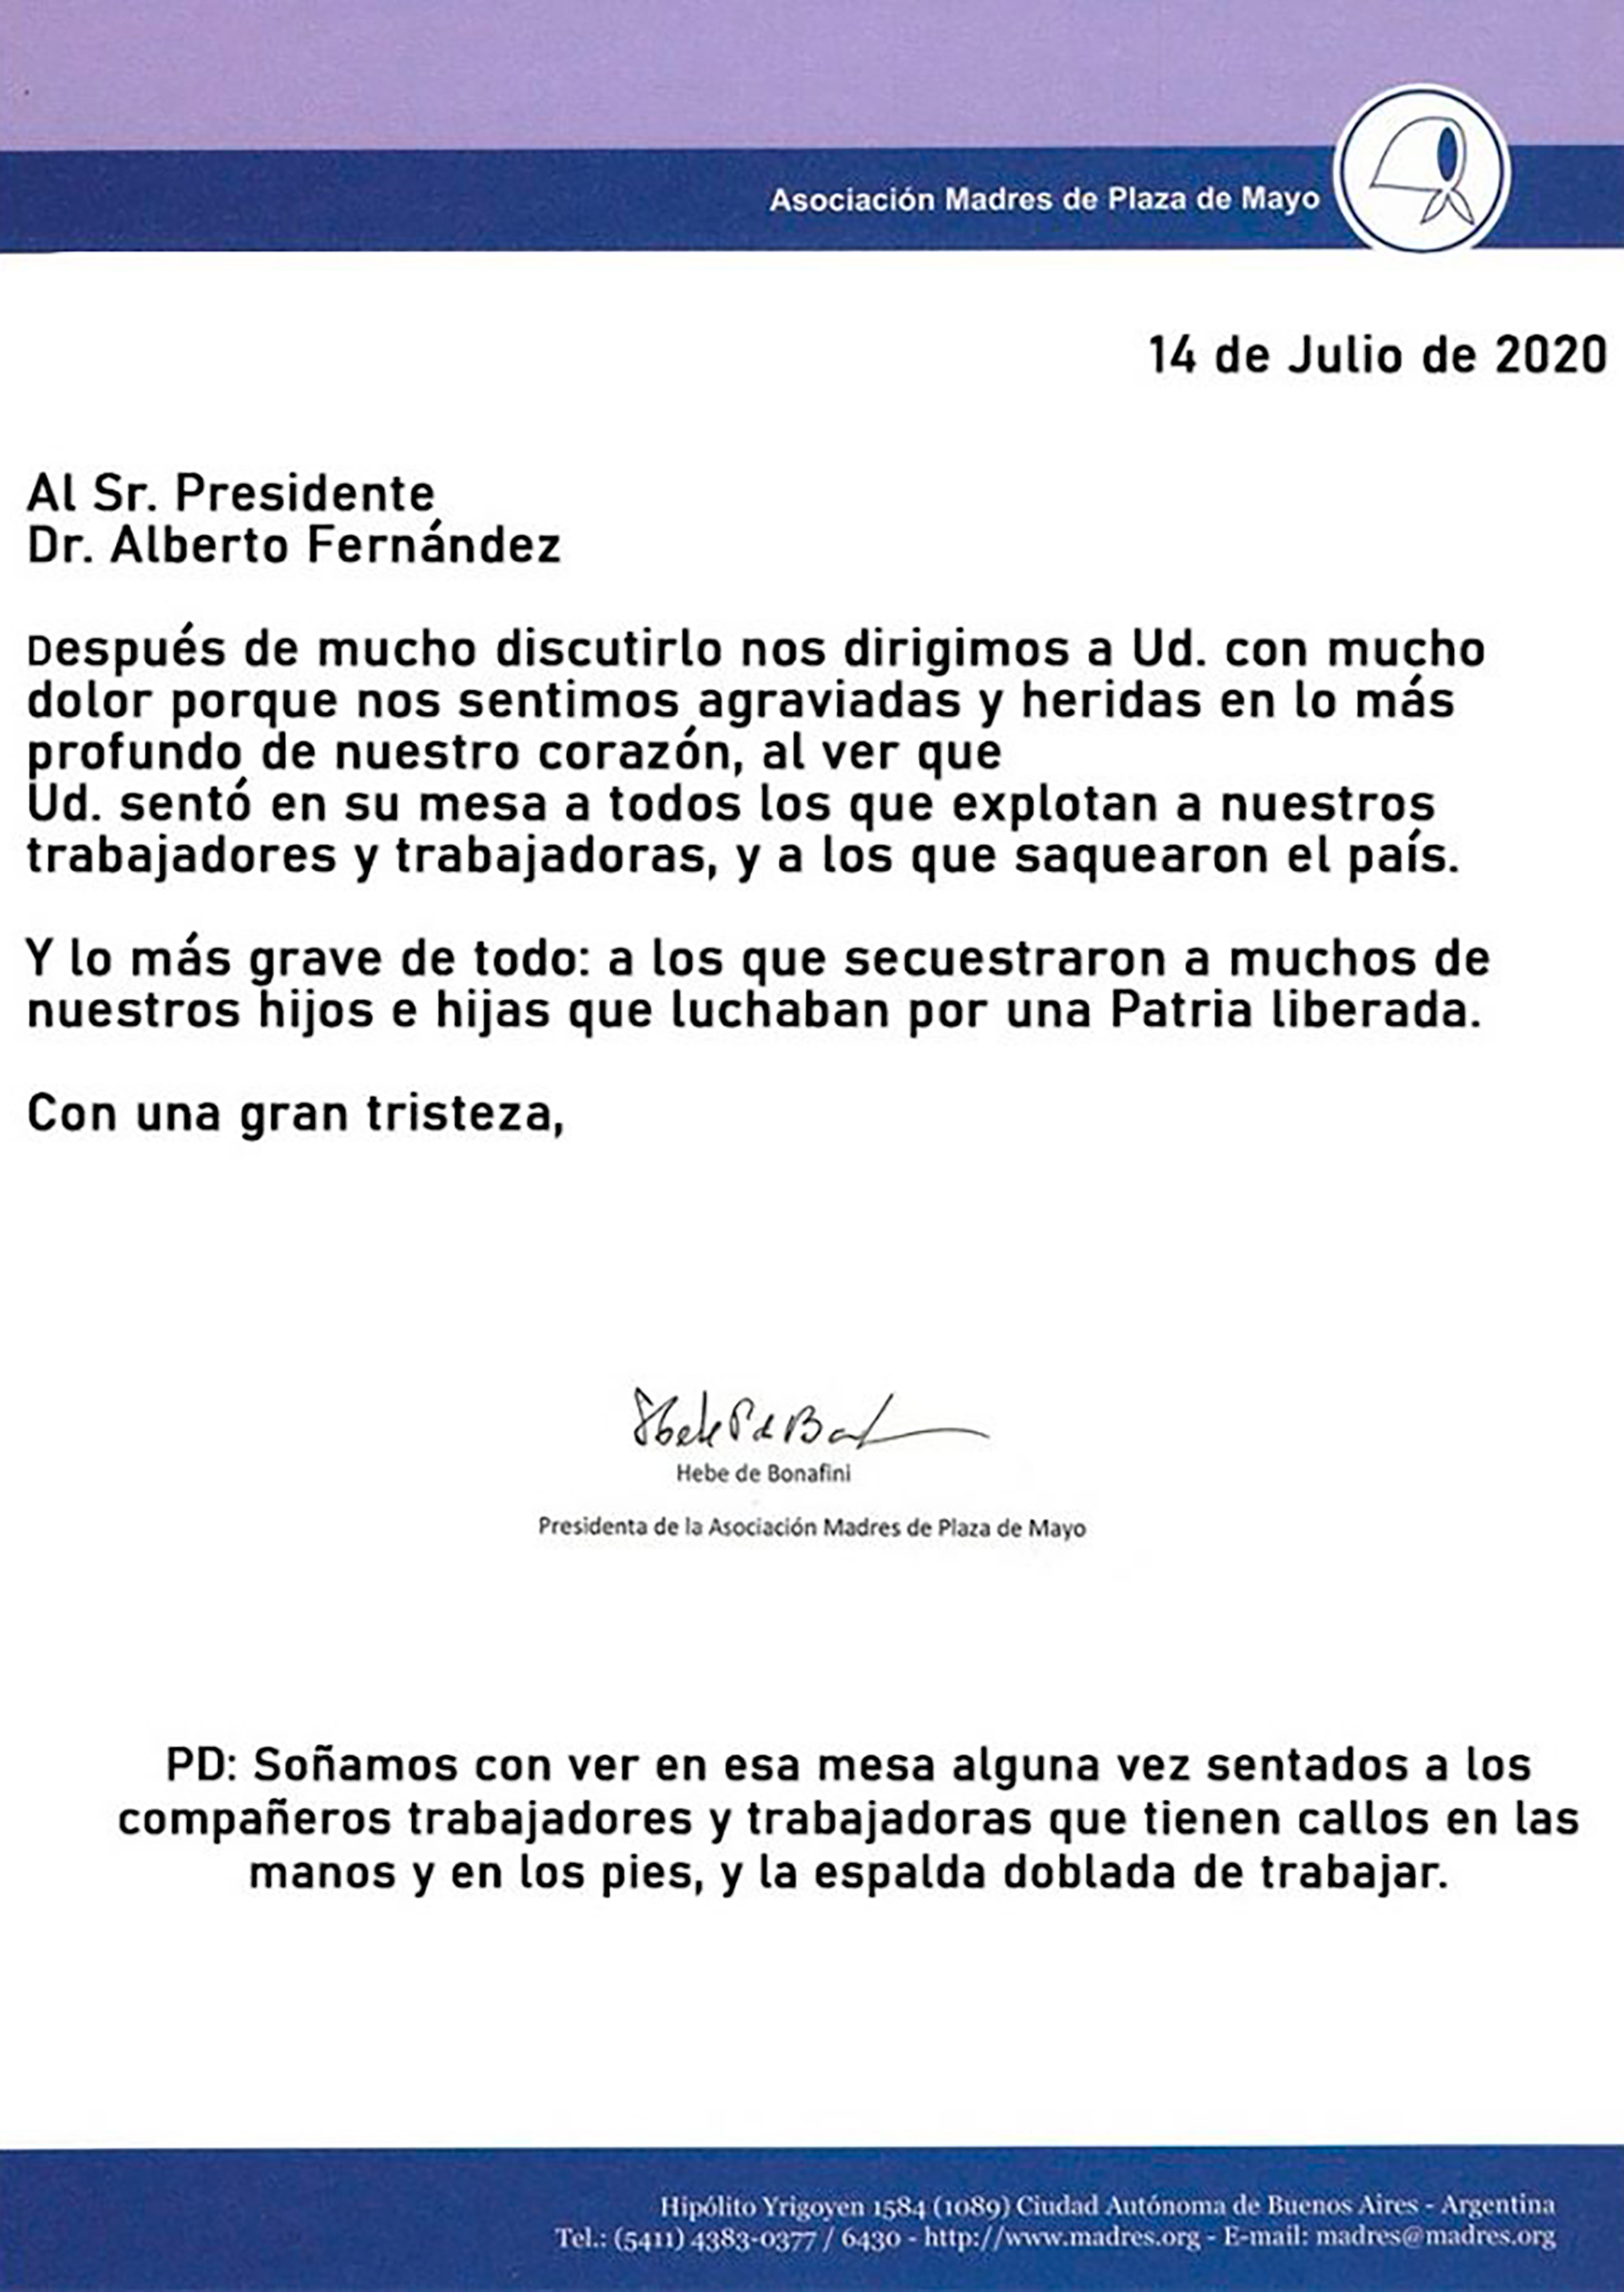 La carta de Hebe de Bonafini contra Alberto Fernández